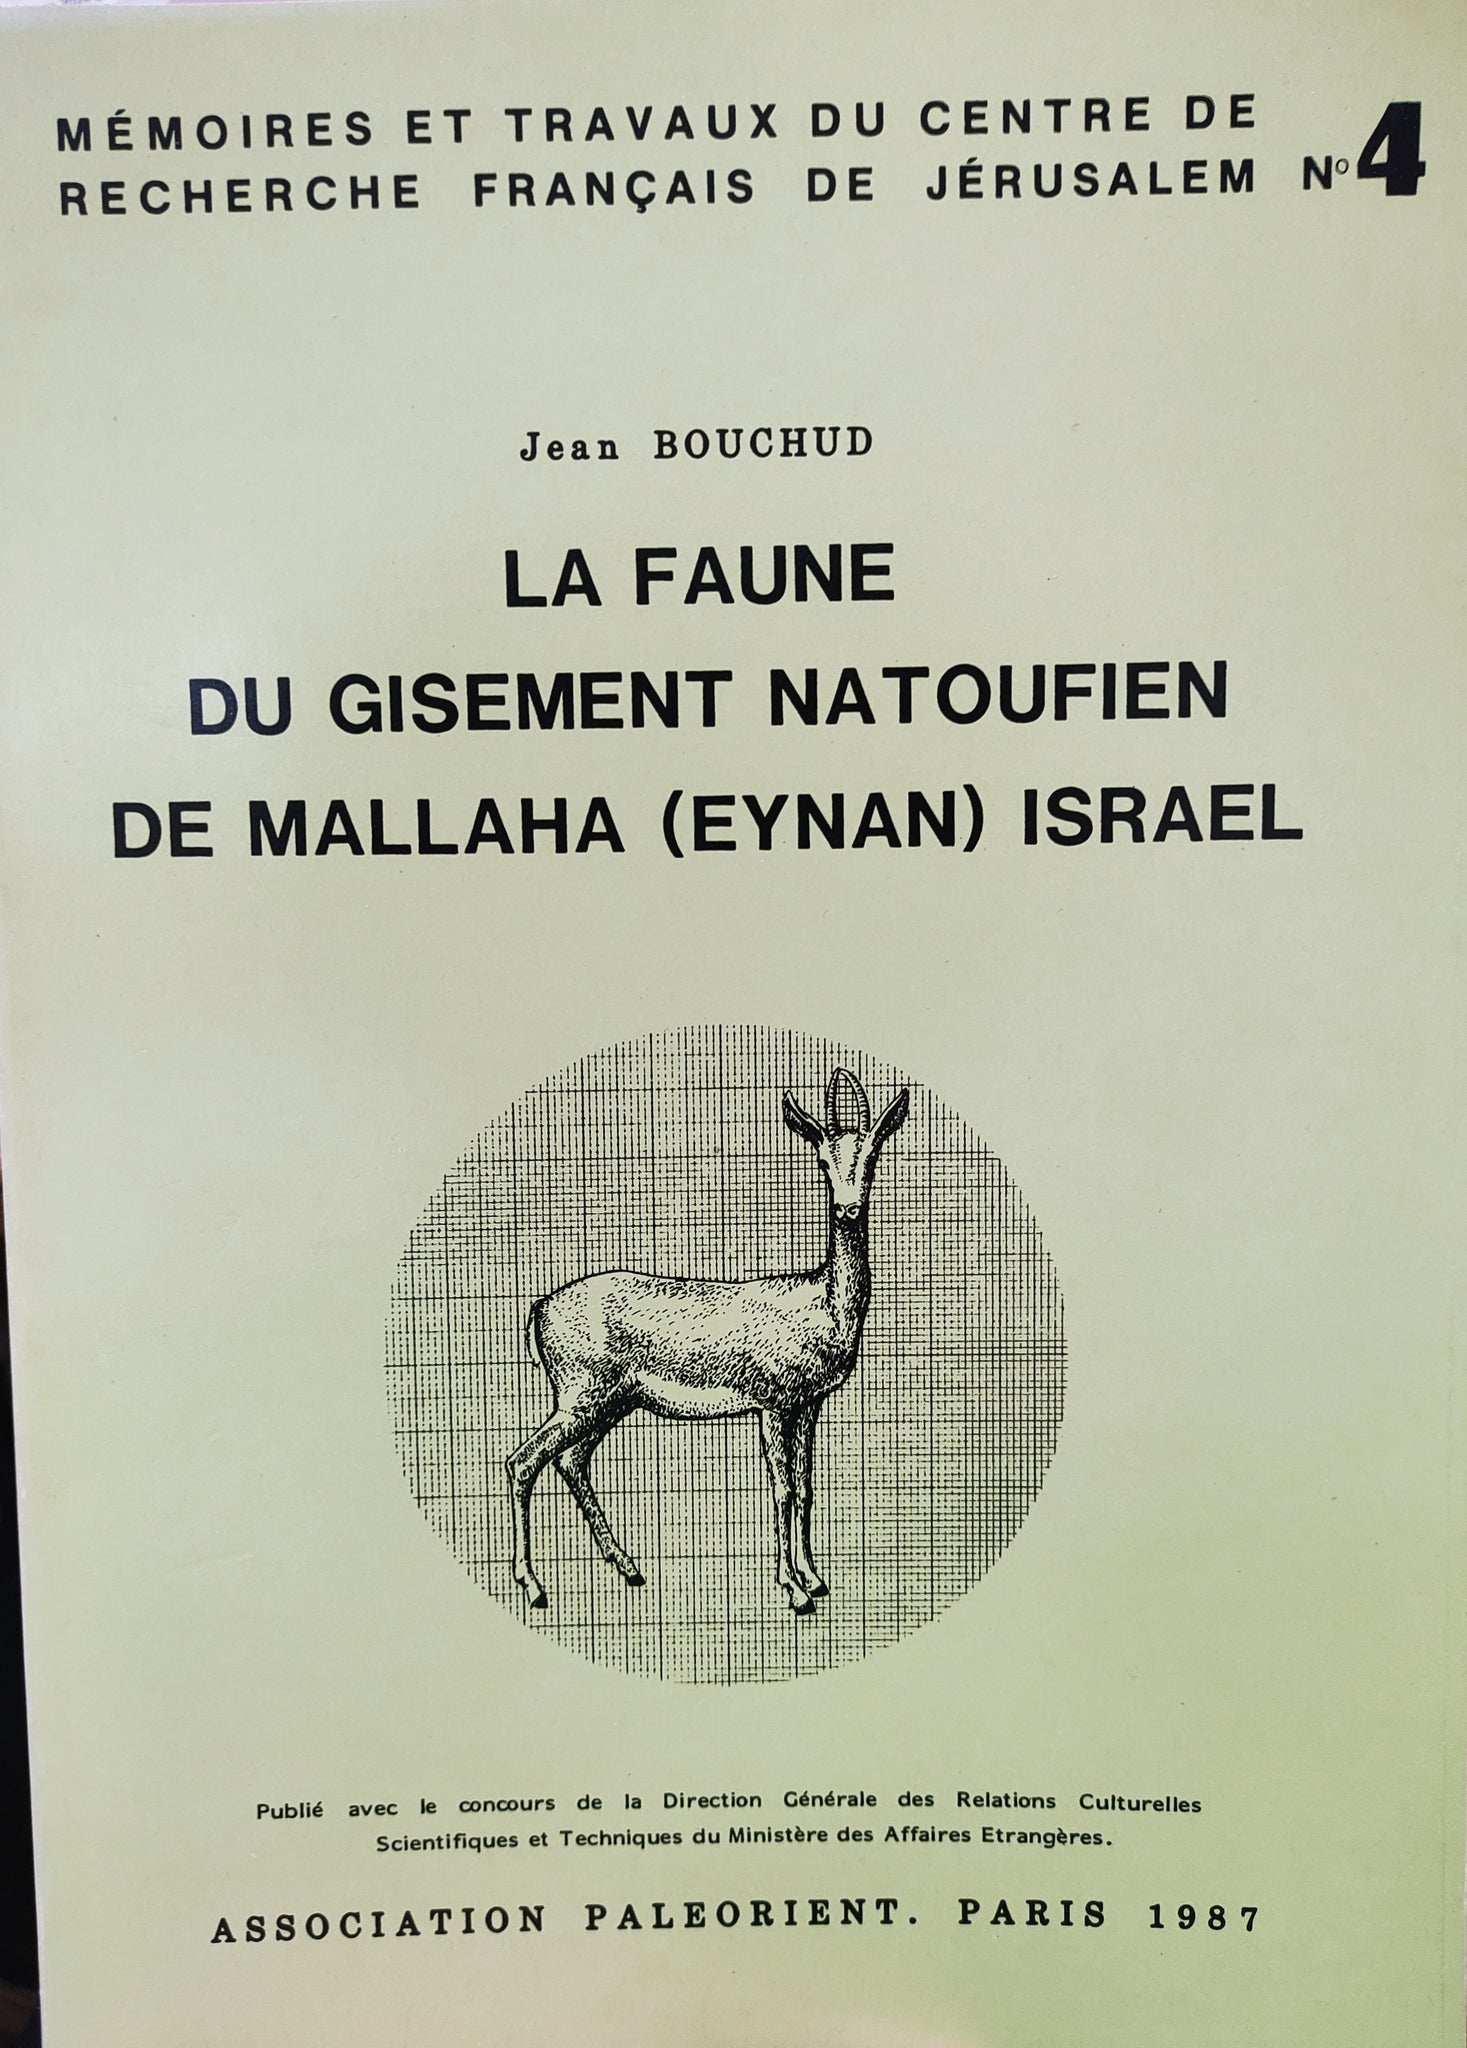 La faune du gisement natoufien de Mallaha (Eynan), Israel. Mémoires et travaux du centre de recherche français de Jérusalem n°4.